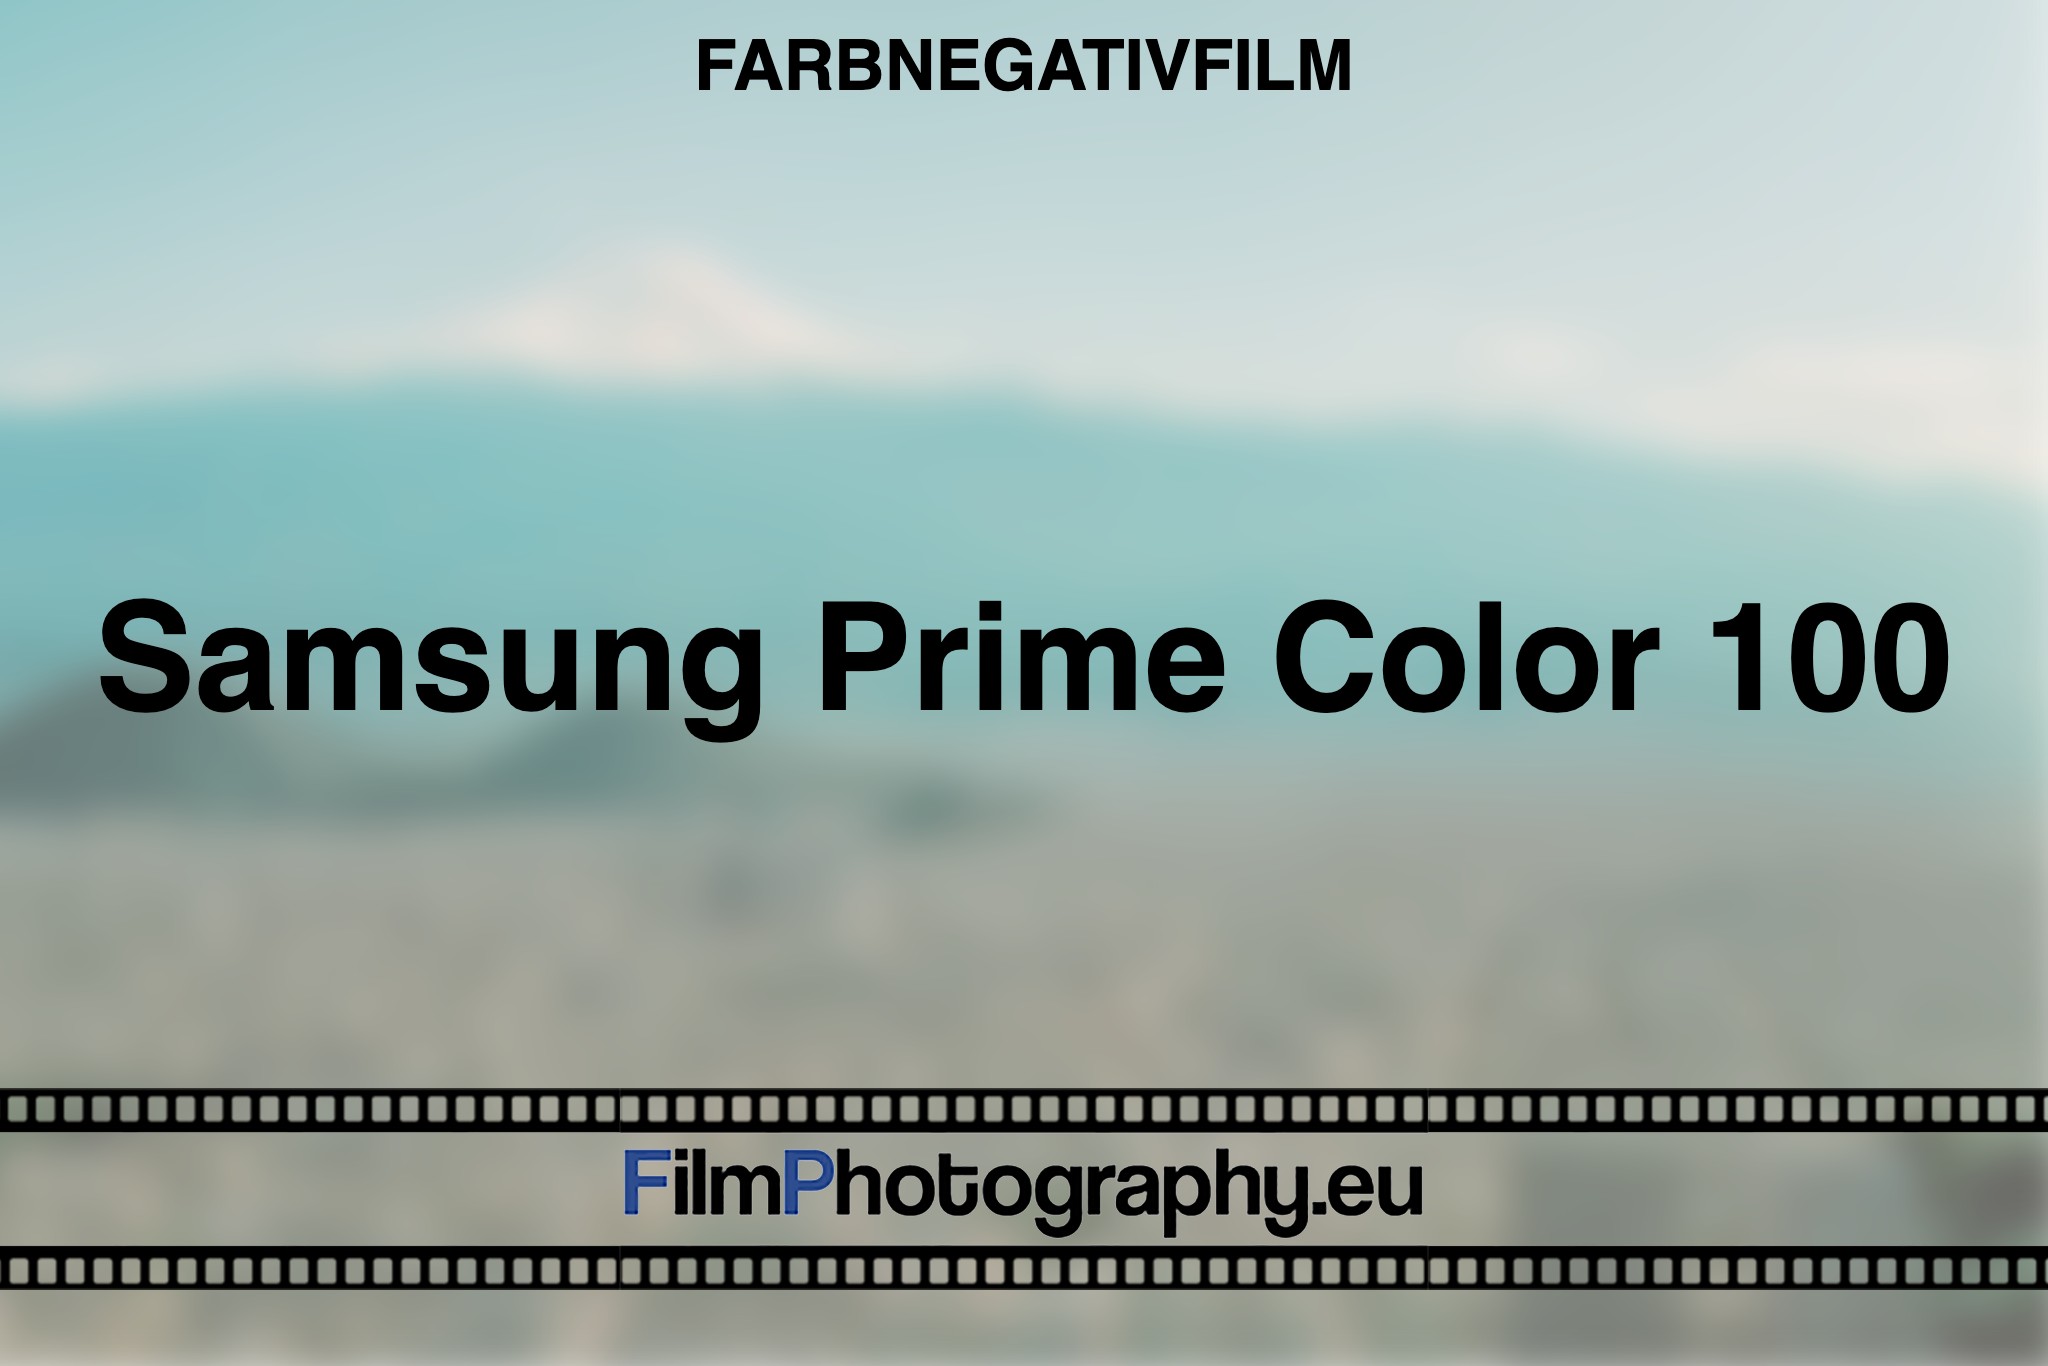 samsung-prime-color-100-farbnegativfilm-bnv